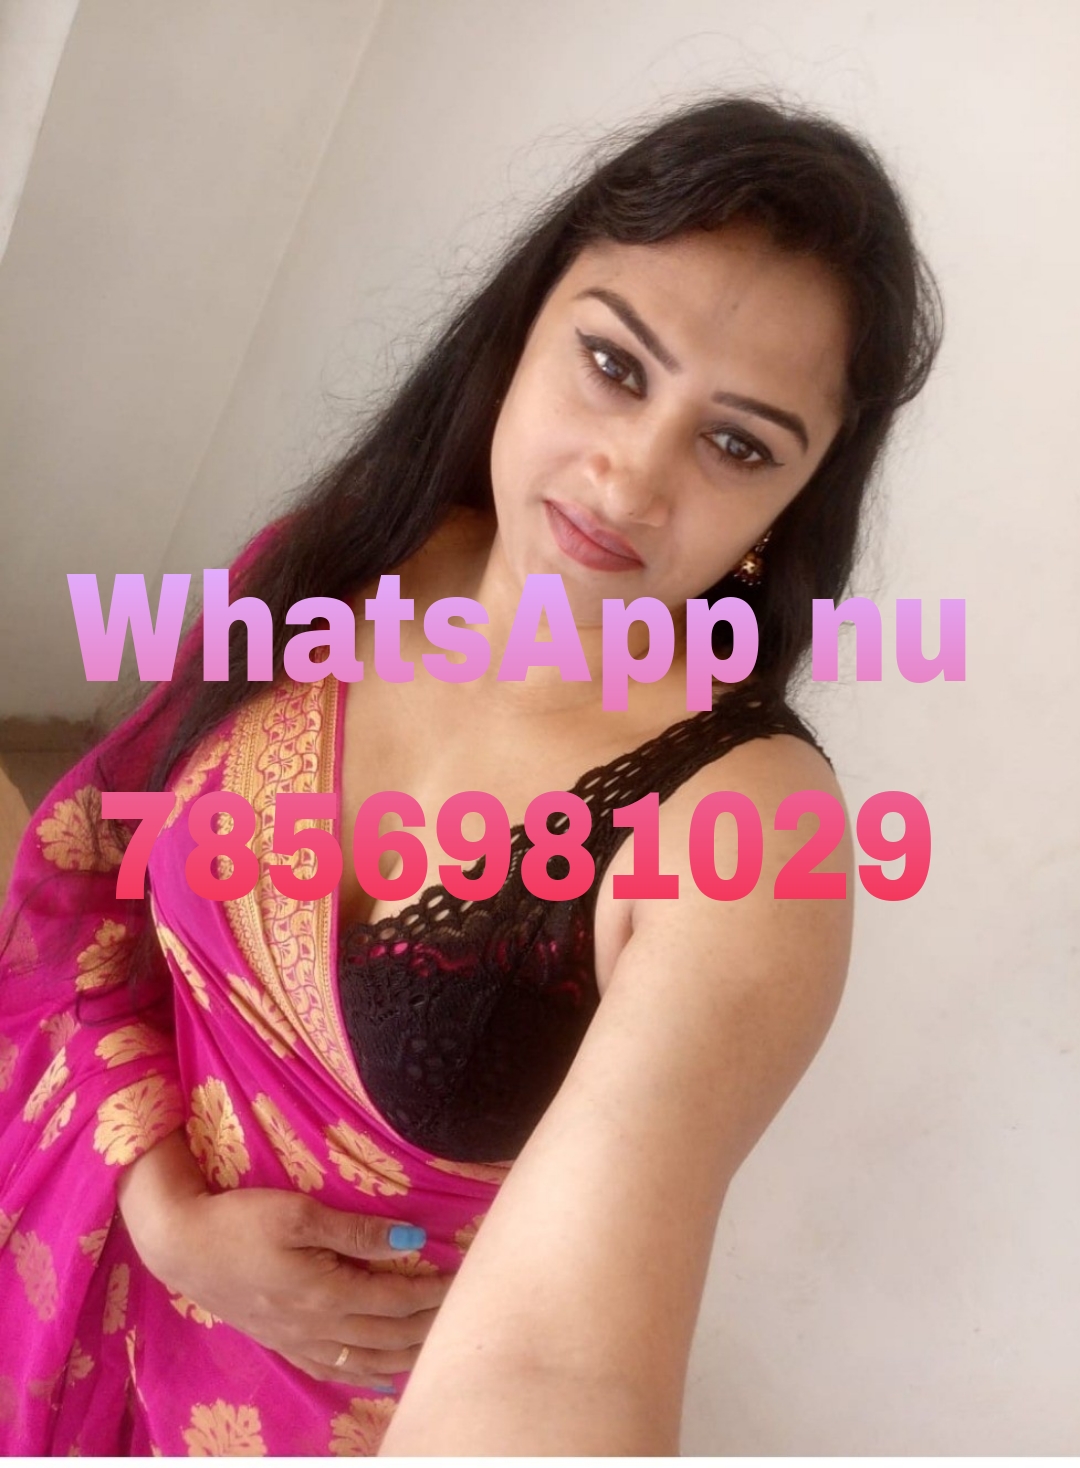 Call girl in Patna - name